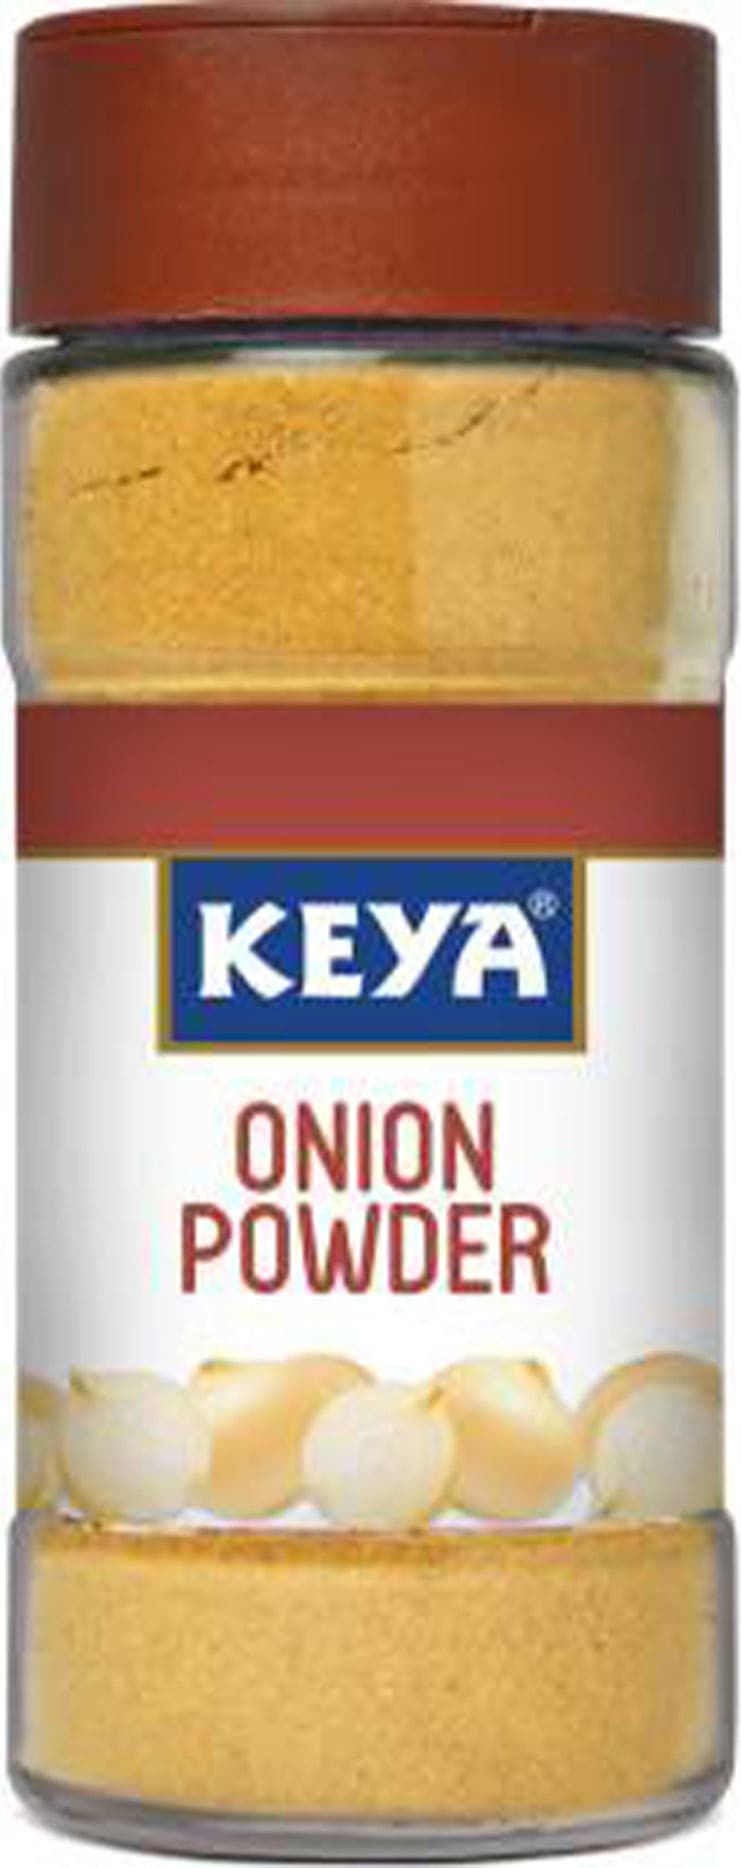 Keya Onion Powder (7047388922043)